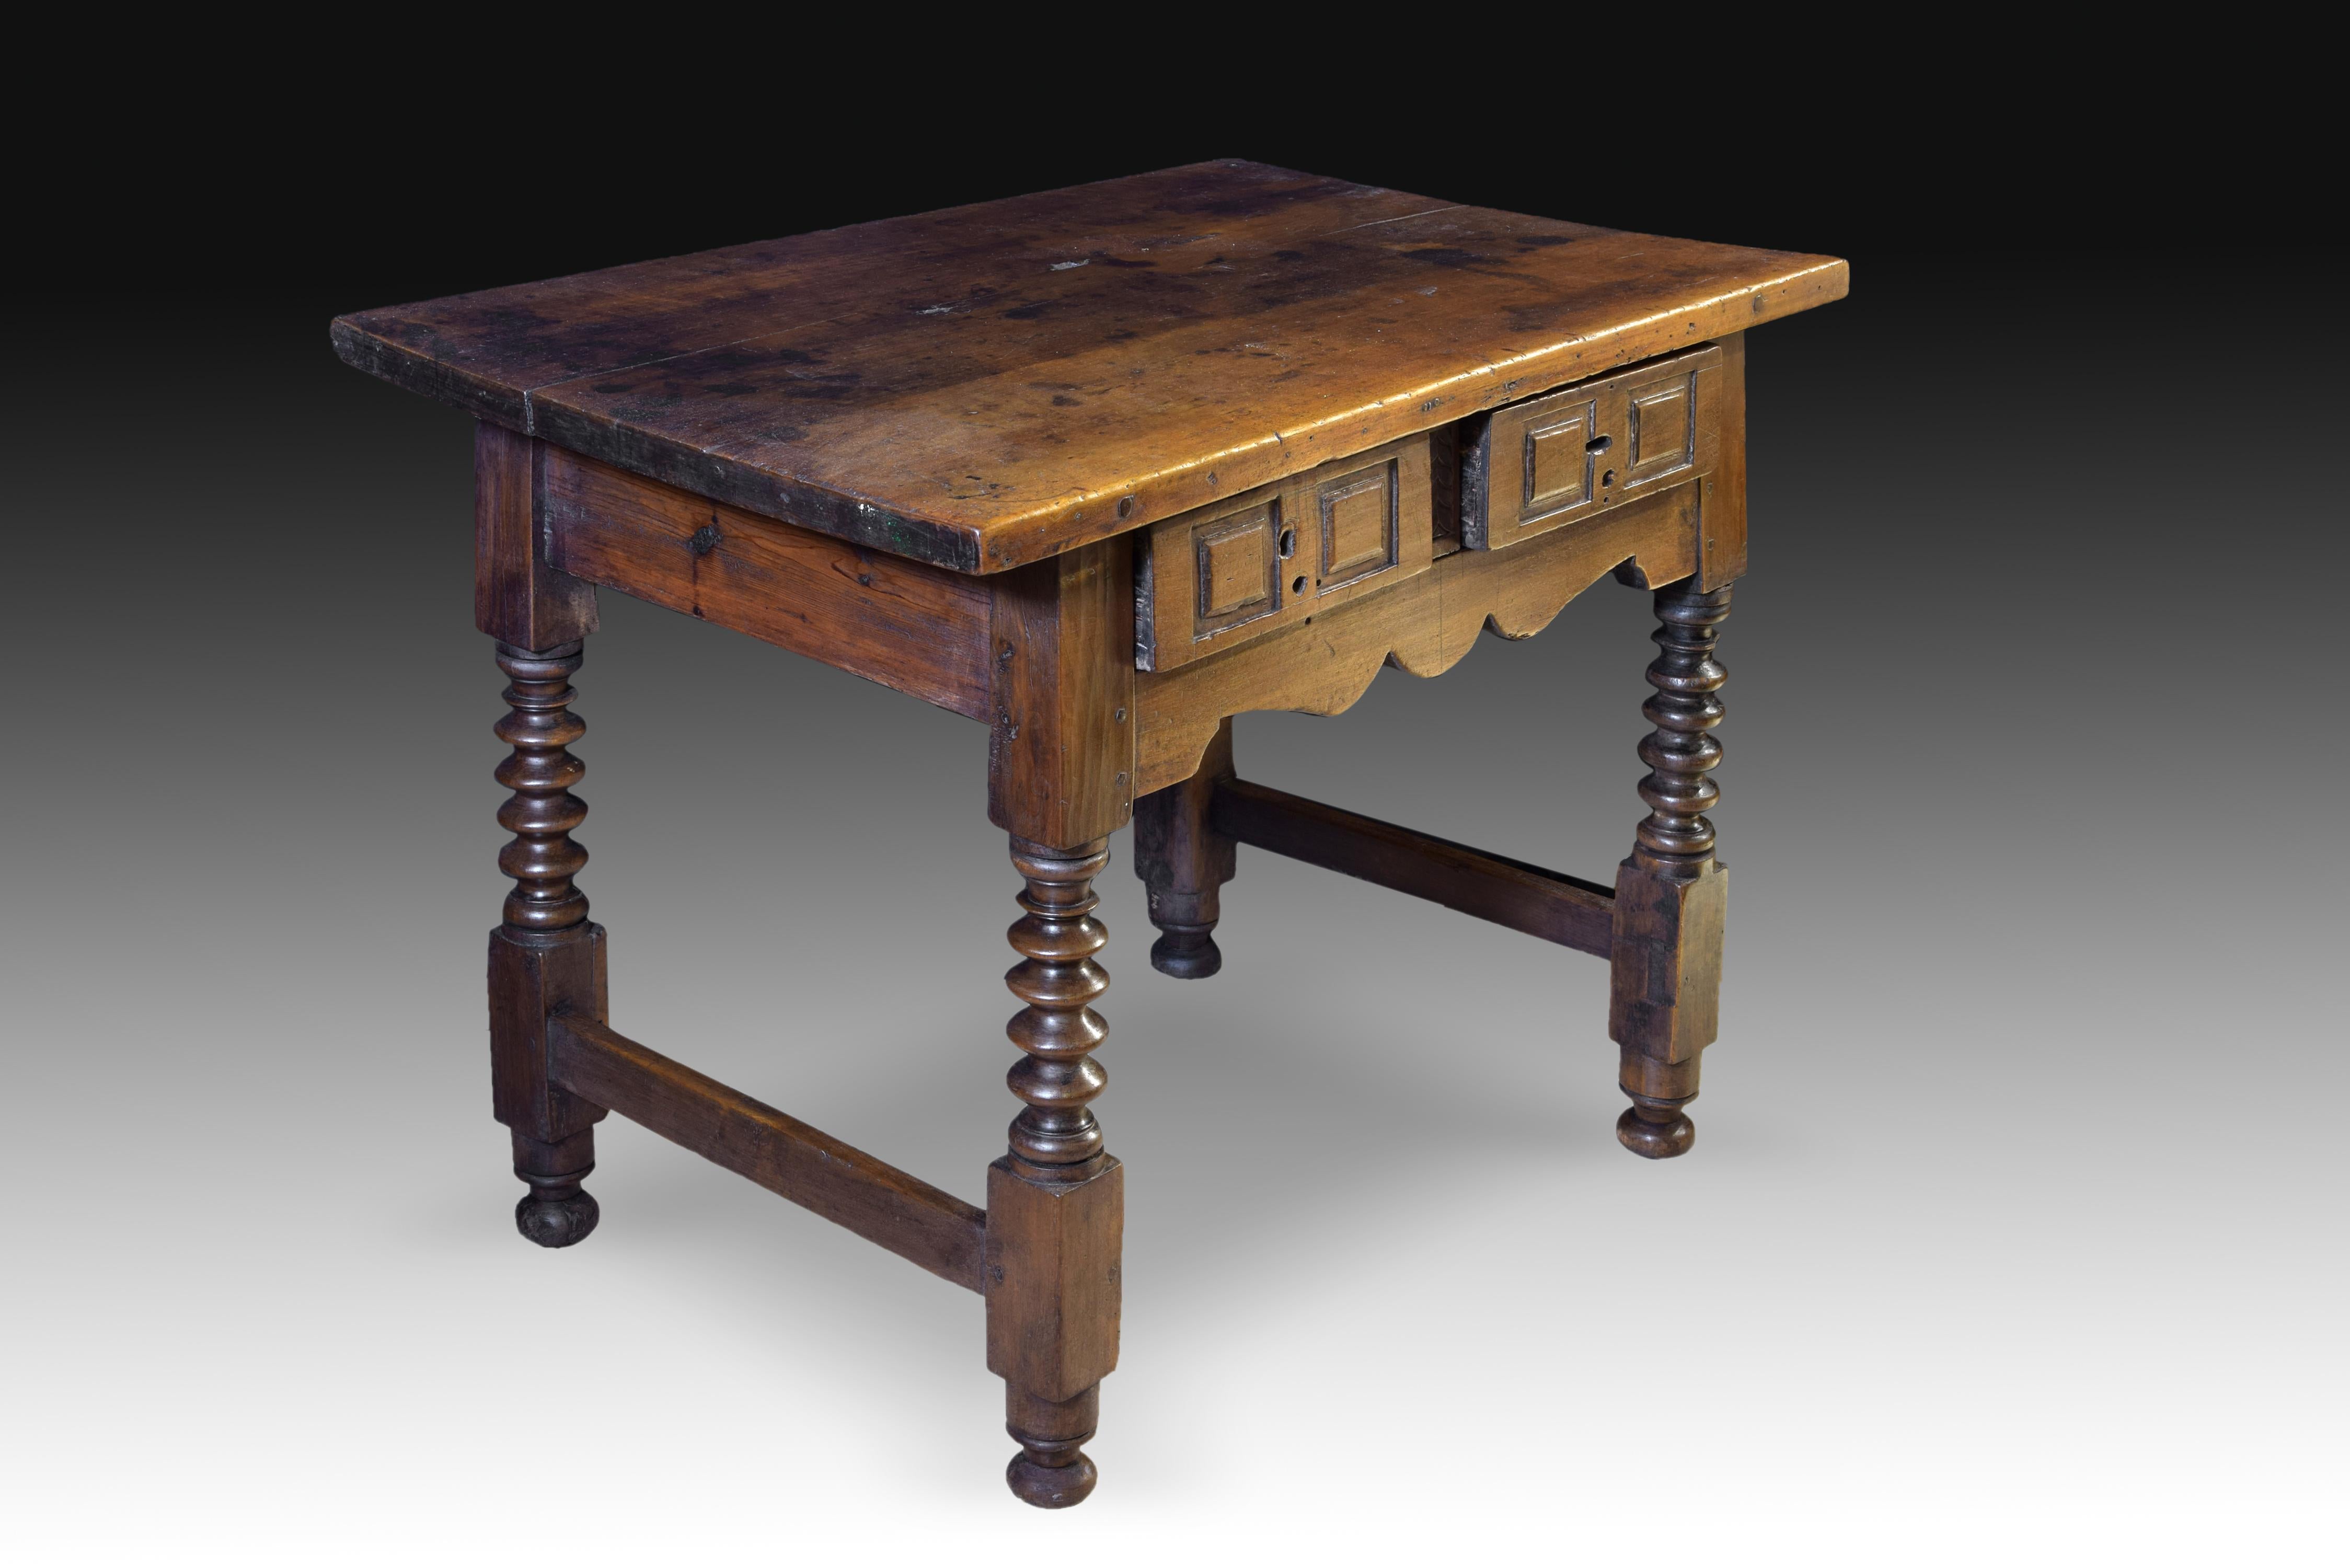 Tisch aus Nussbaumholz. 17. Jahrhundert.
Tisch mit glatter rechteckiger Platte und zwei Schubladen auf der Vorderseite, verziert mit einfachen geometrischen Formen auf ihren Fronten, so dass zwischen ihnen ein Streifen mit Laschen. Die Beine, die in